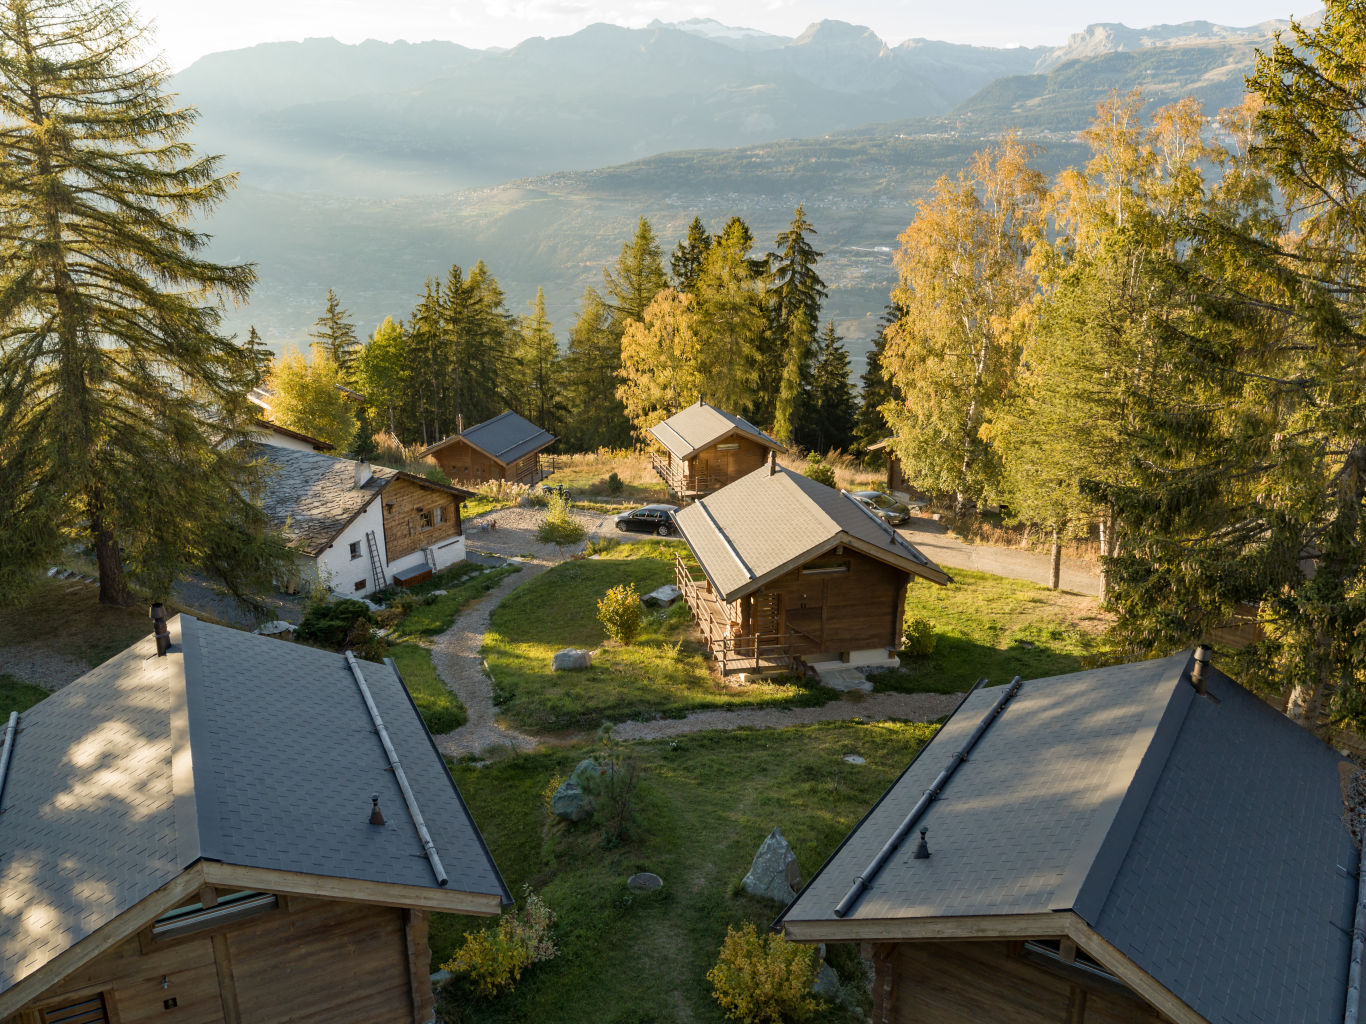 Passez un séjour authentique dans l'un des chalets qui forment ensemble ce hameau exclusif au milieu d'une nature protégée, le Valais, en Suisse.